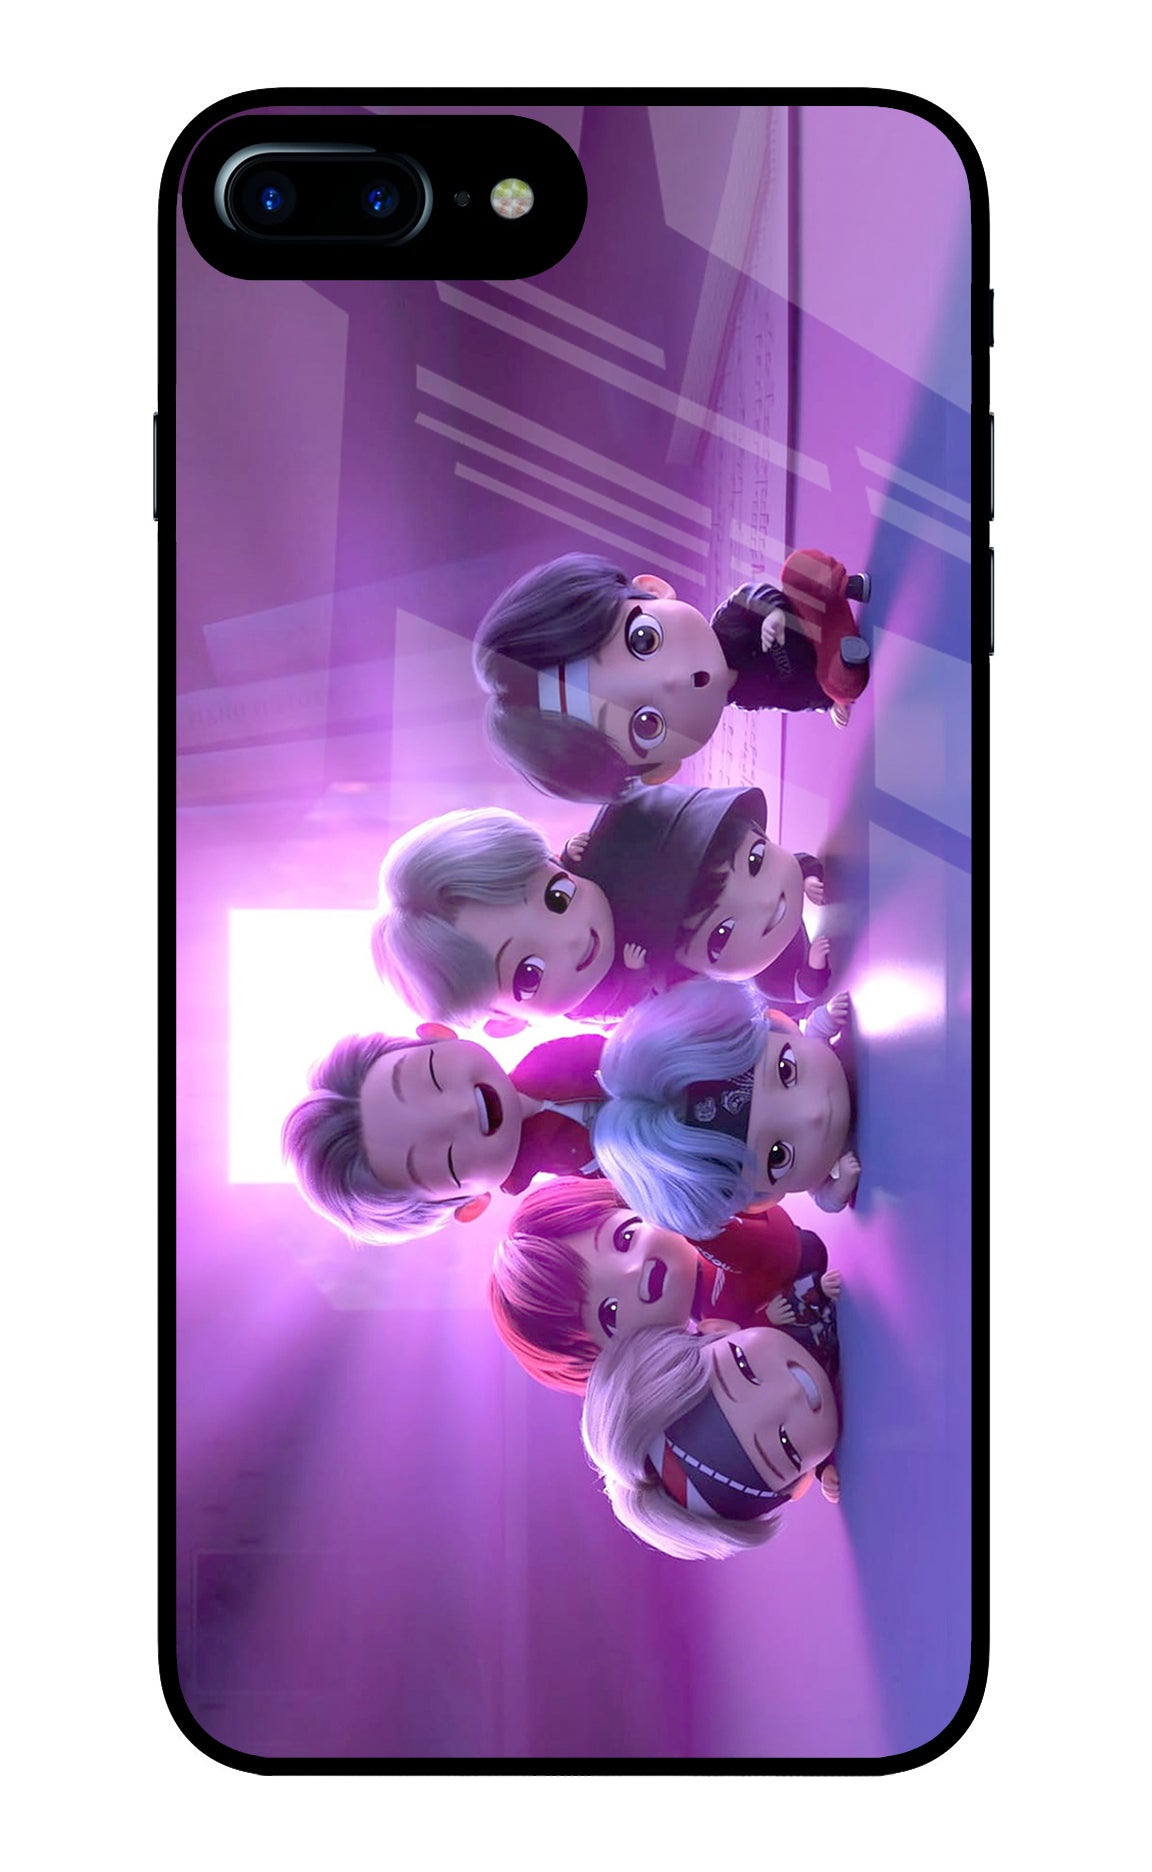 BTS Chibi iPhone 7 Plus Glass Case